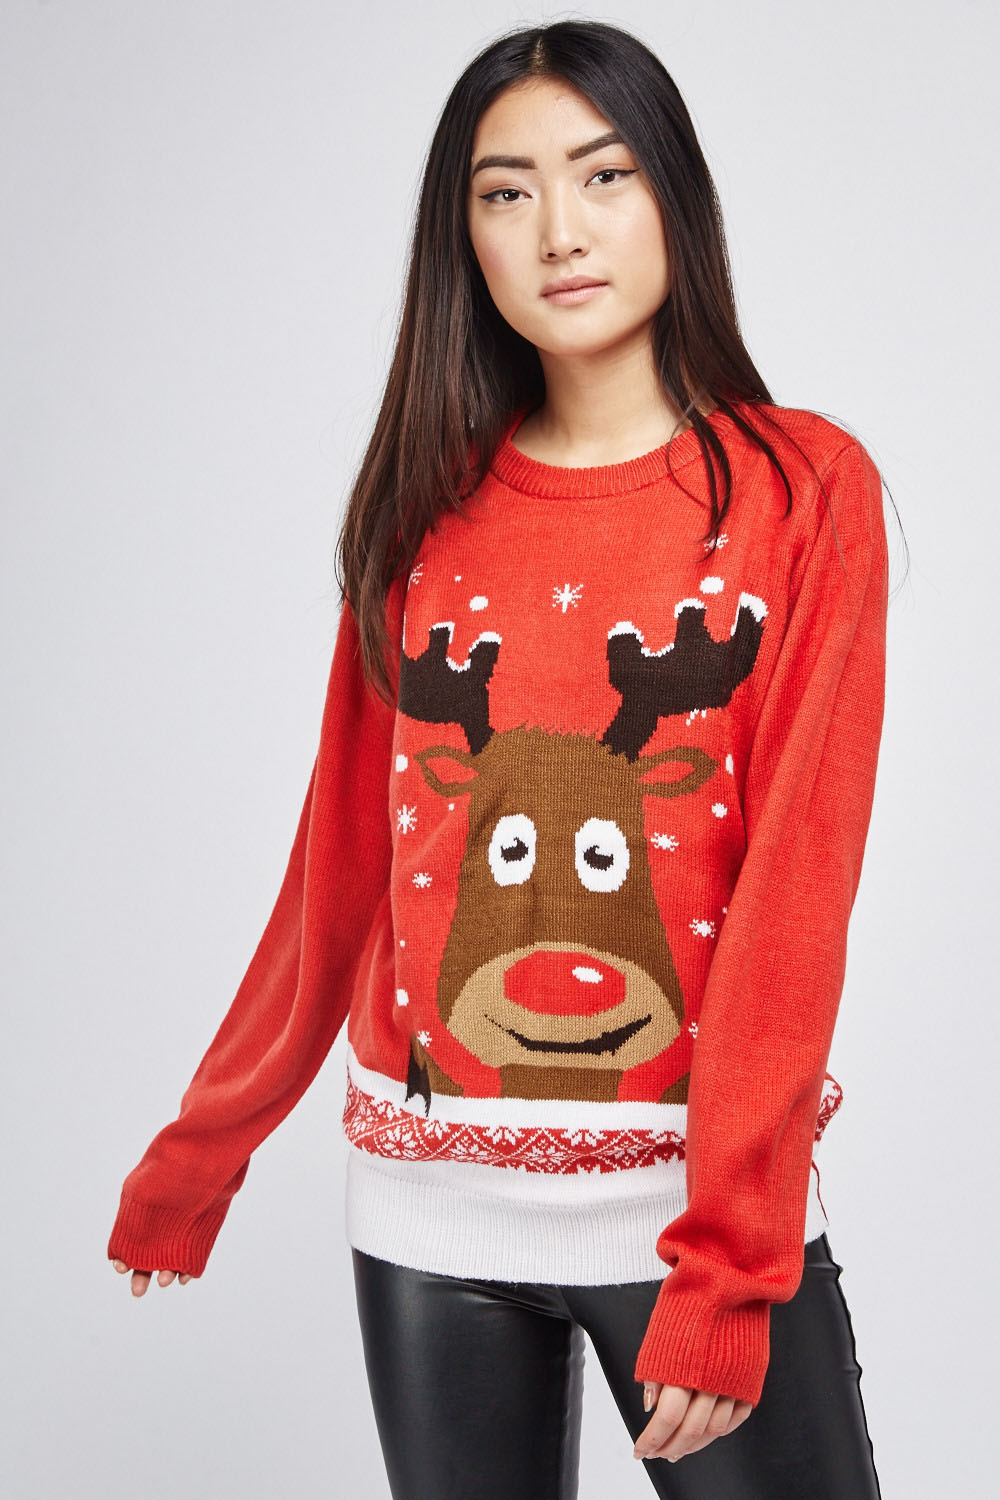 Festive Reindeer Knit Jumper - Just $6